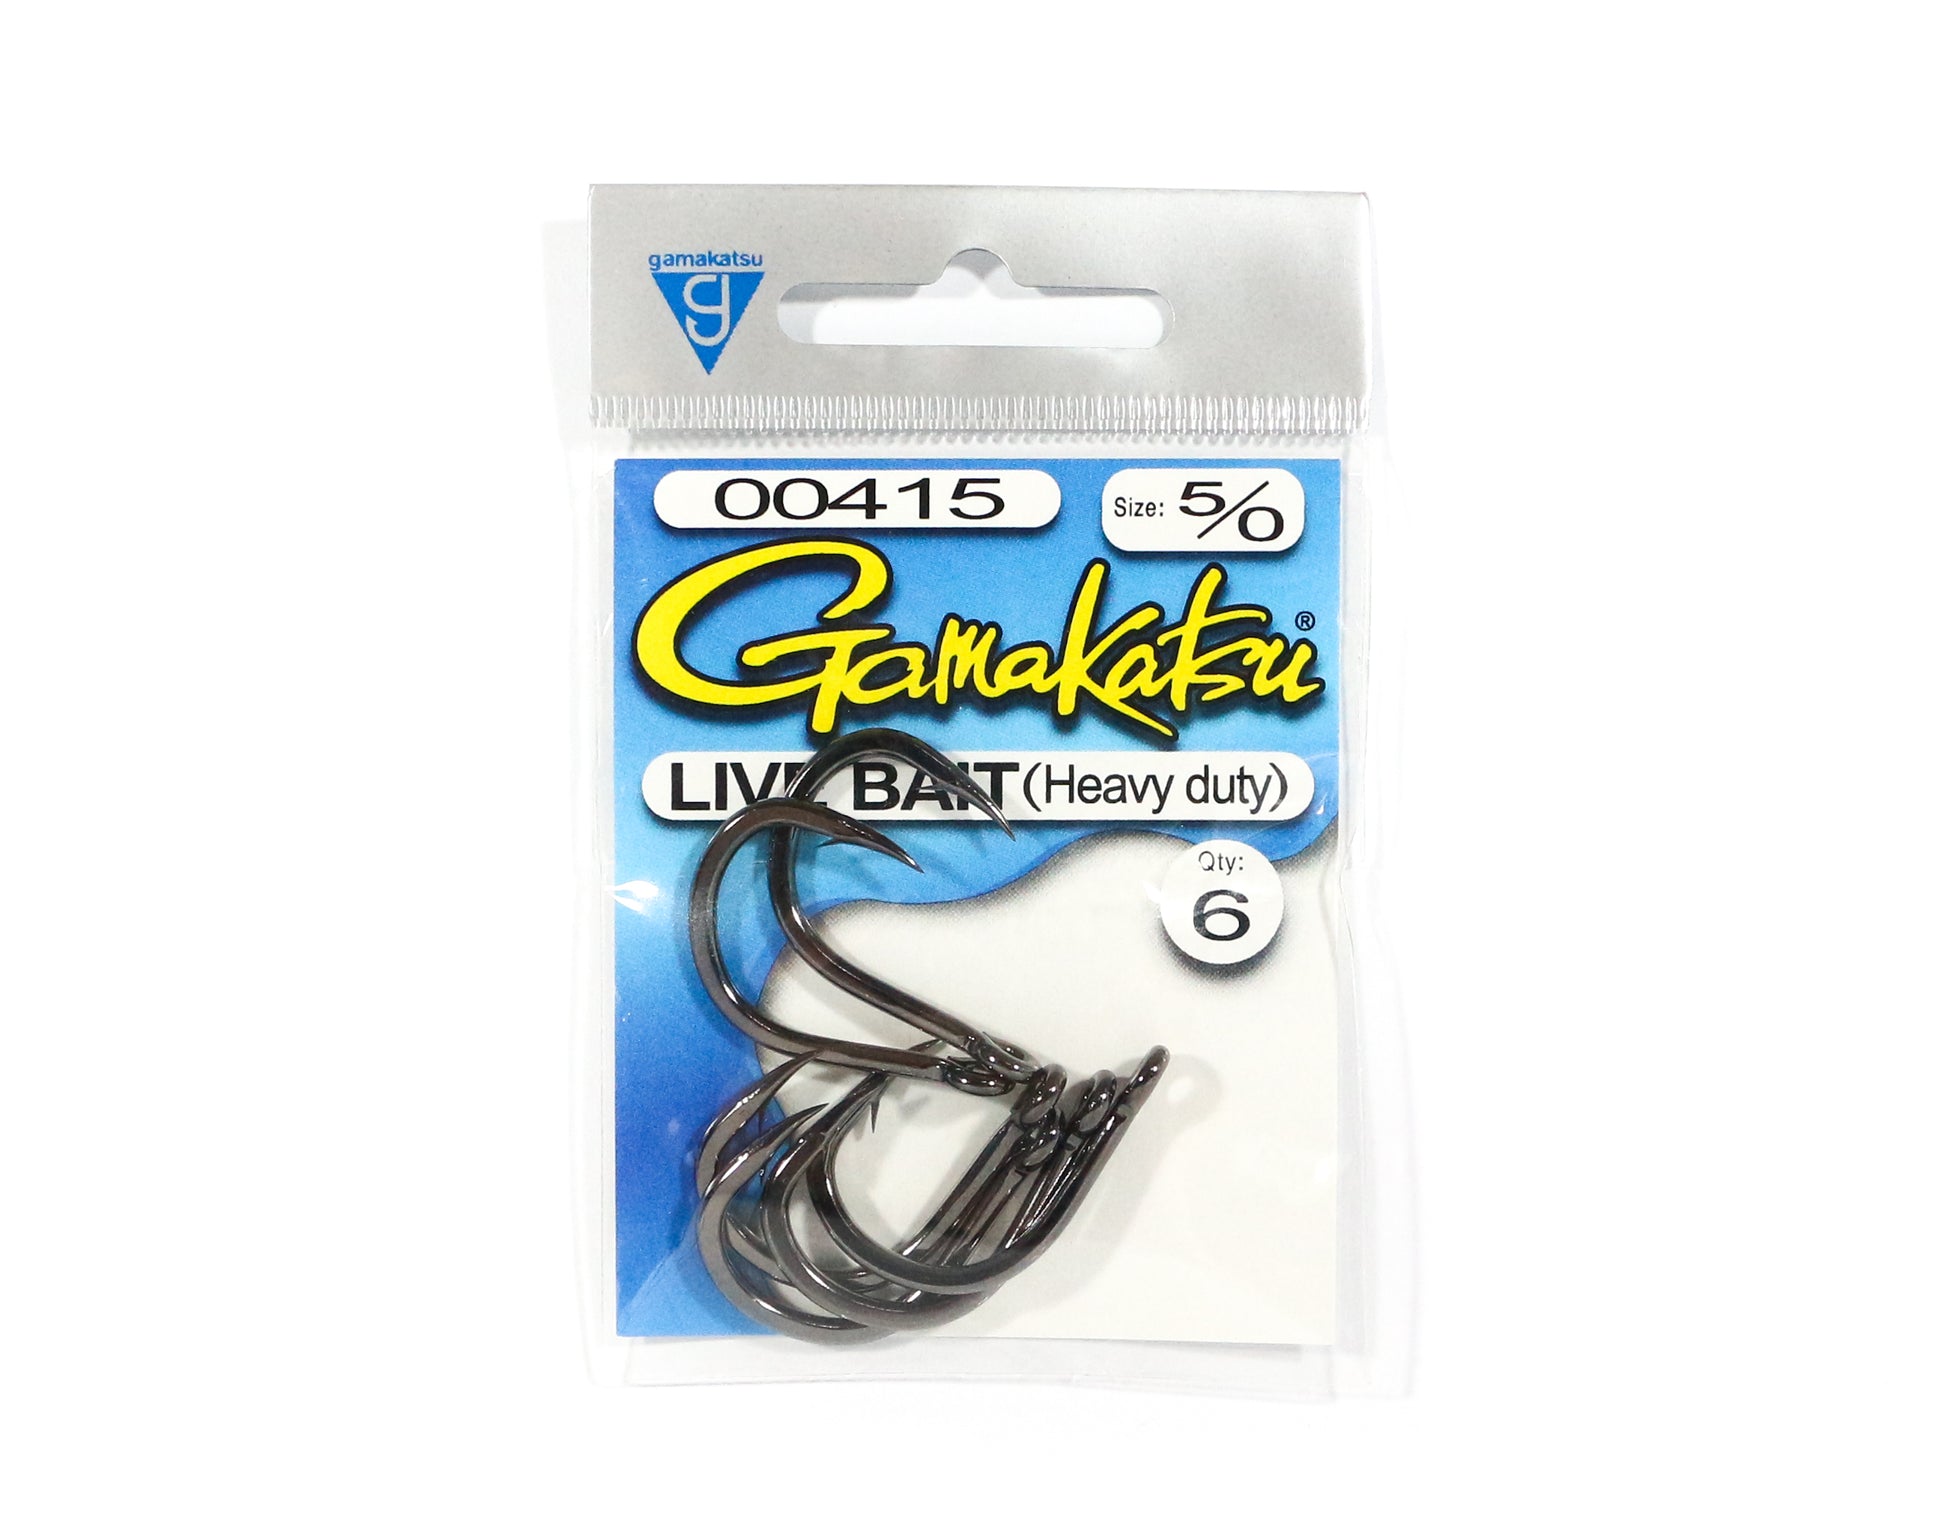 gamakatsu live bait hooks heavy duty size 7/0 forged heavy wire